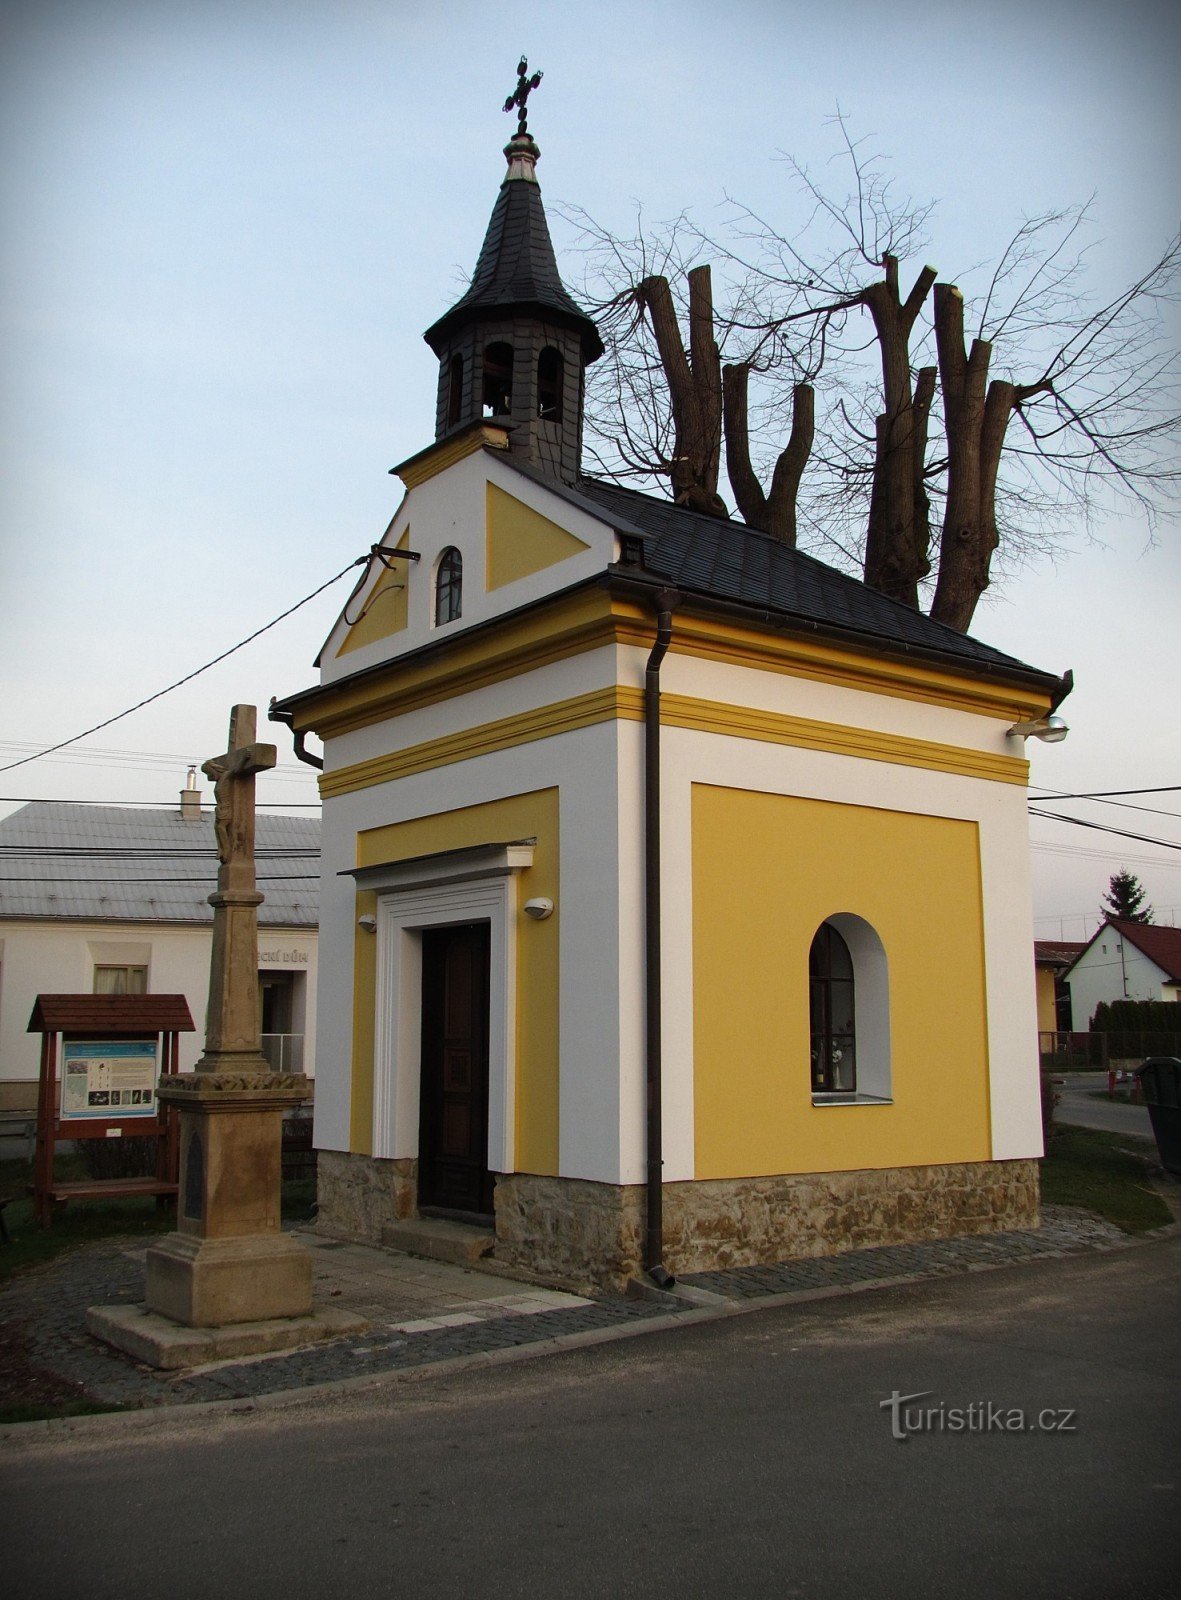 ルコヴェチェク - 村の名所とアトラクション